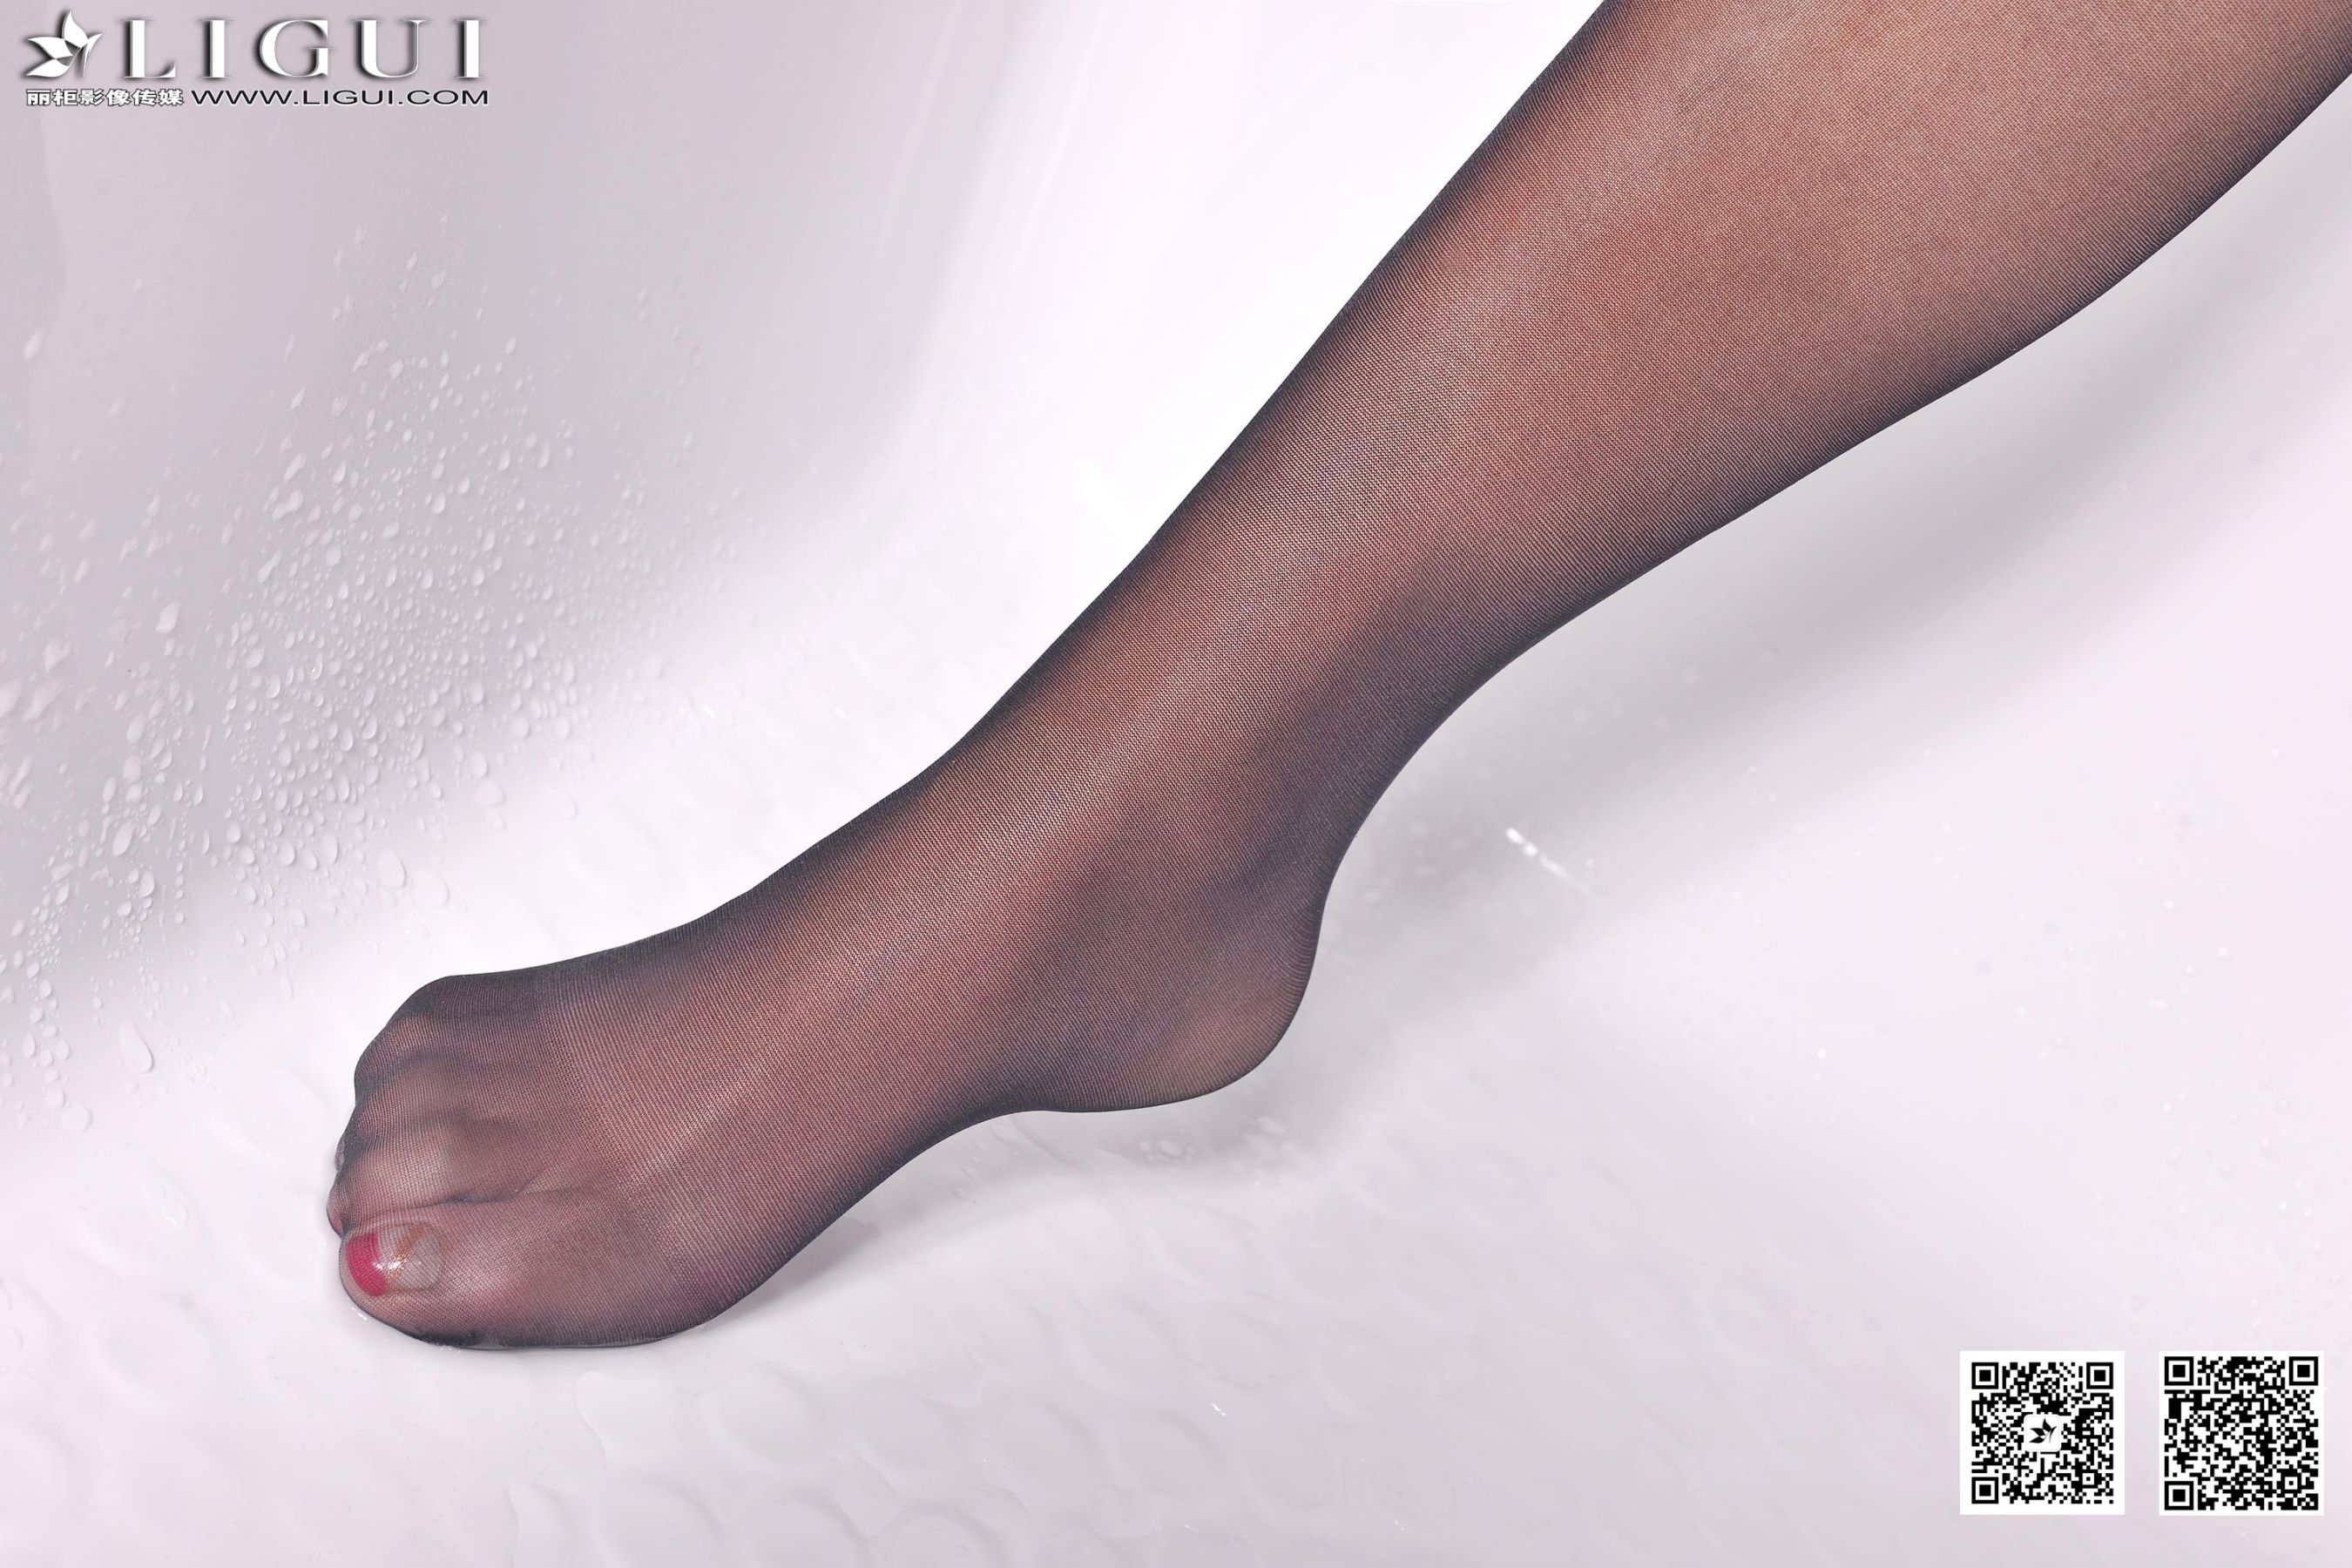 [柜 LIGUI] Model Qingqing “black silk high heel skirt” leg jade foot photo picture